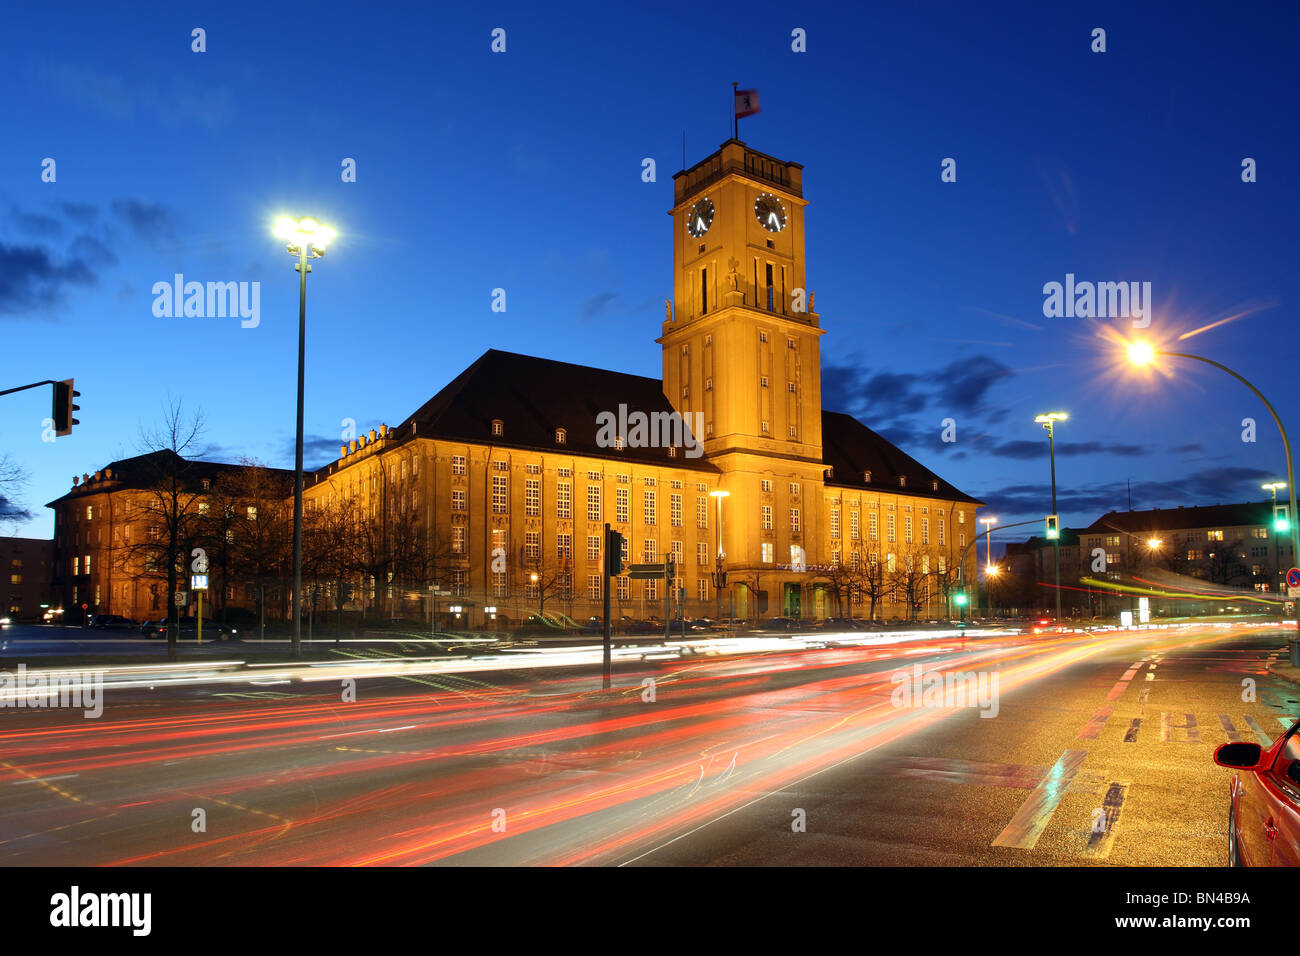 Rathaus Schoeneberg am Abend, Berlin, Deutschland Stockfoto